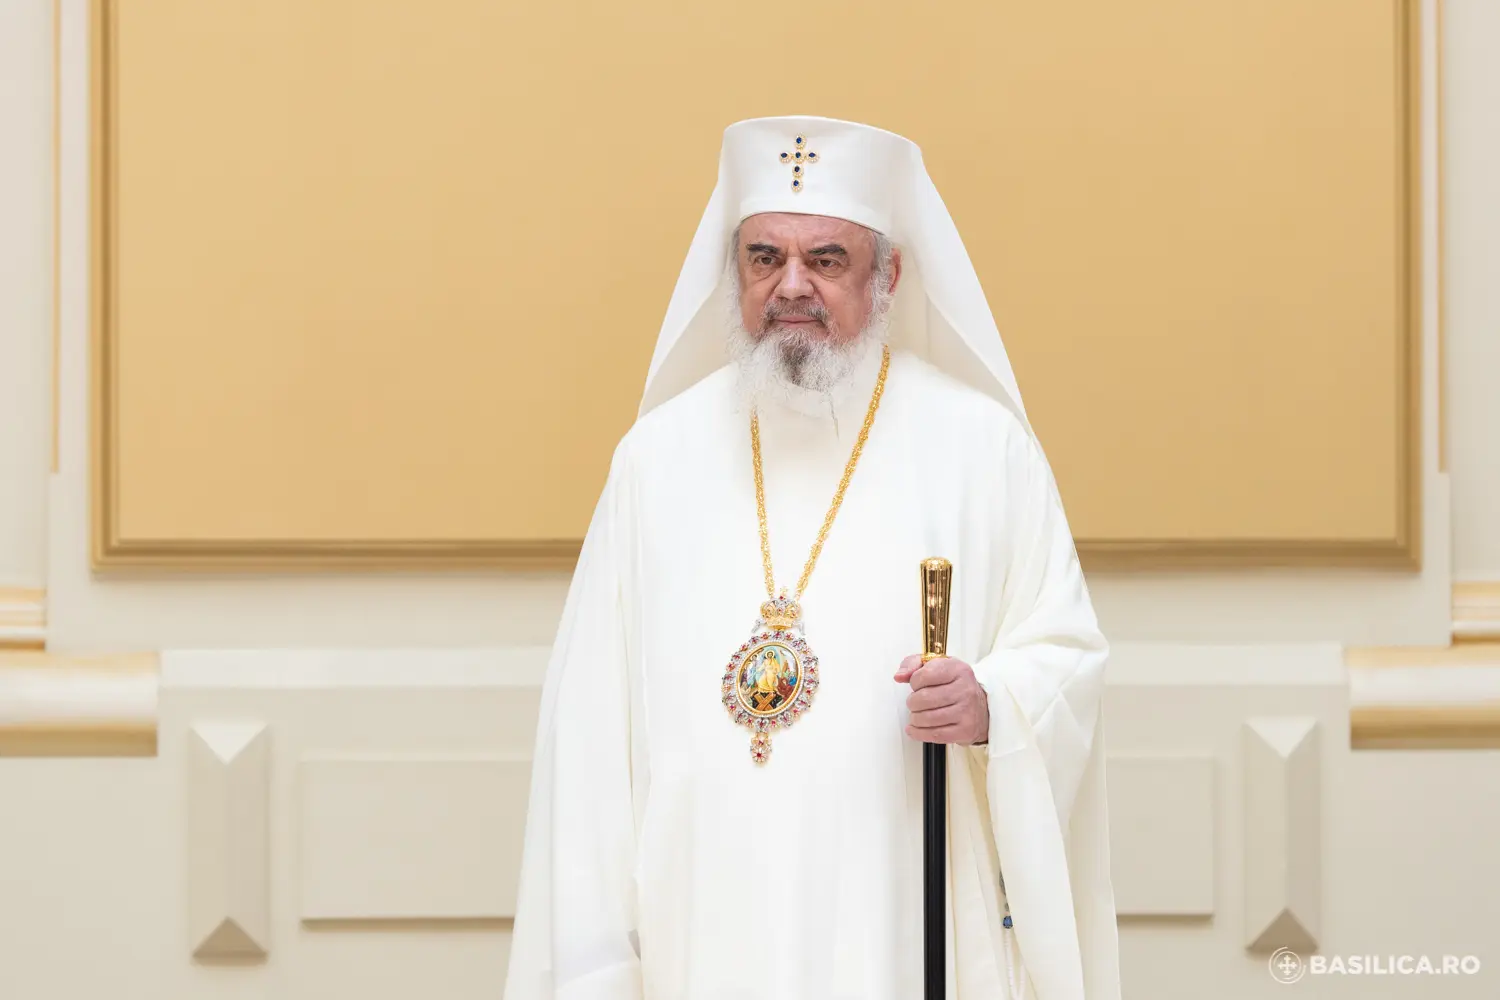 Patriarche de roumanie : message de condoléances et de solidarité après l'événement tragique de belgrade